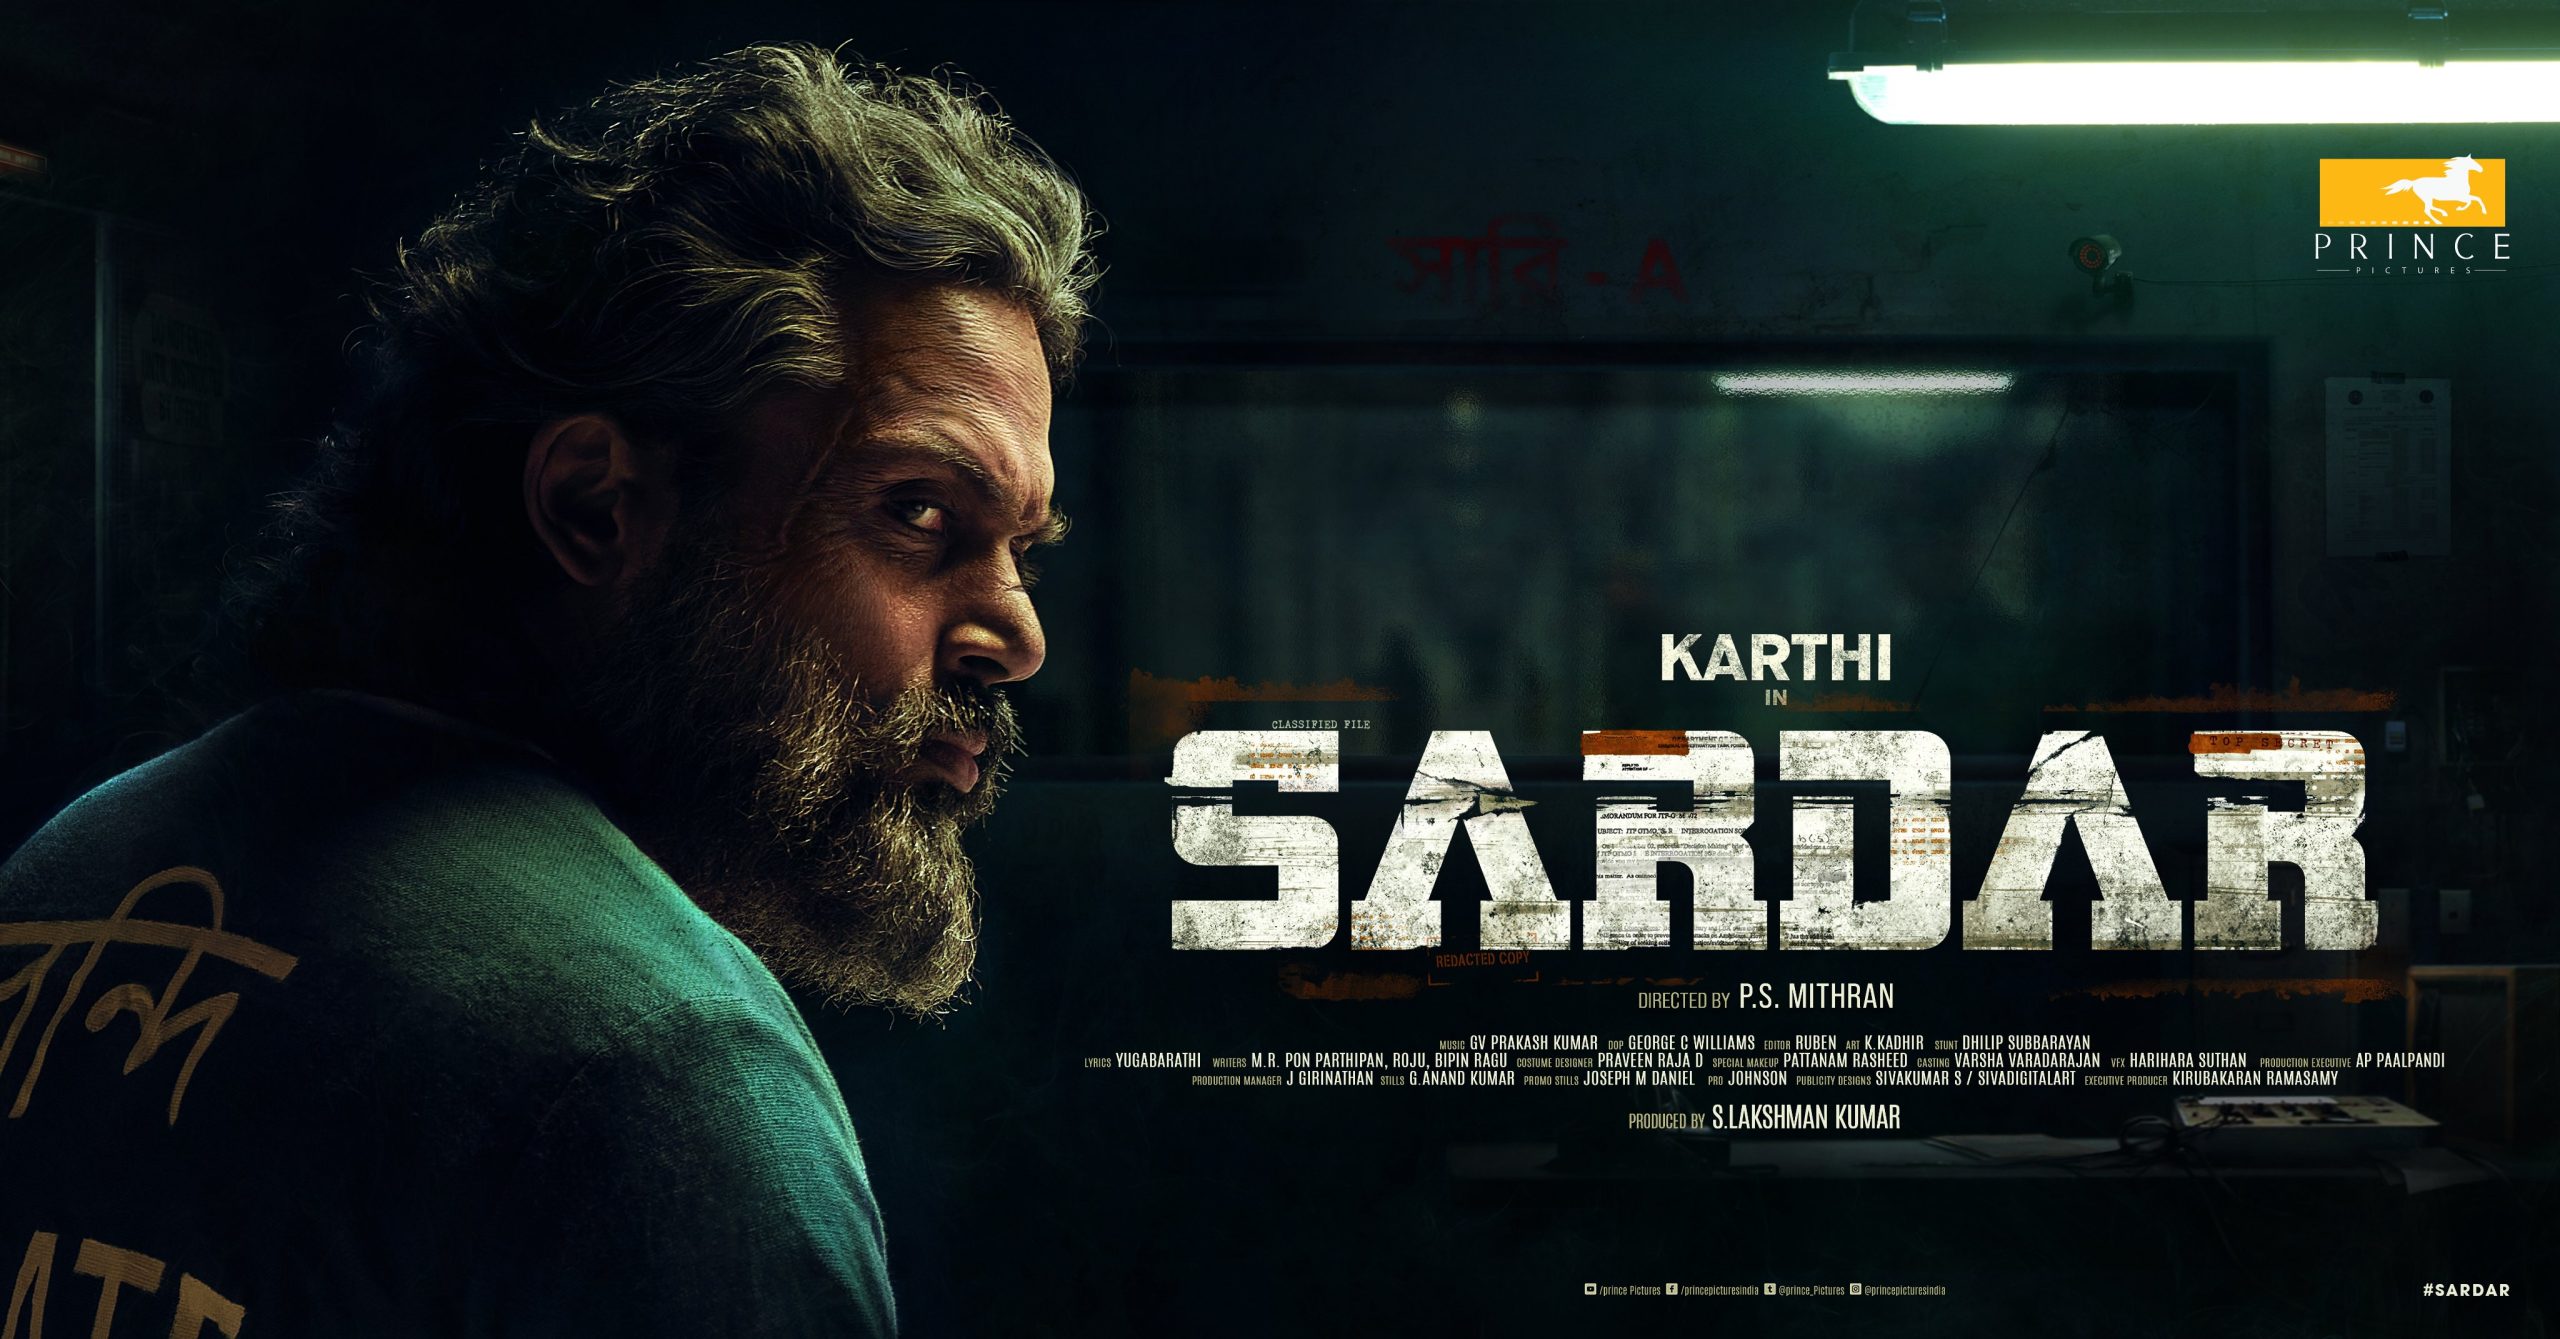 Watch Sardar Tamil Movie Online